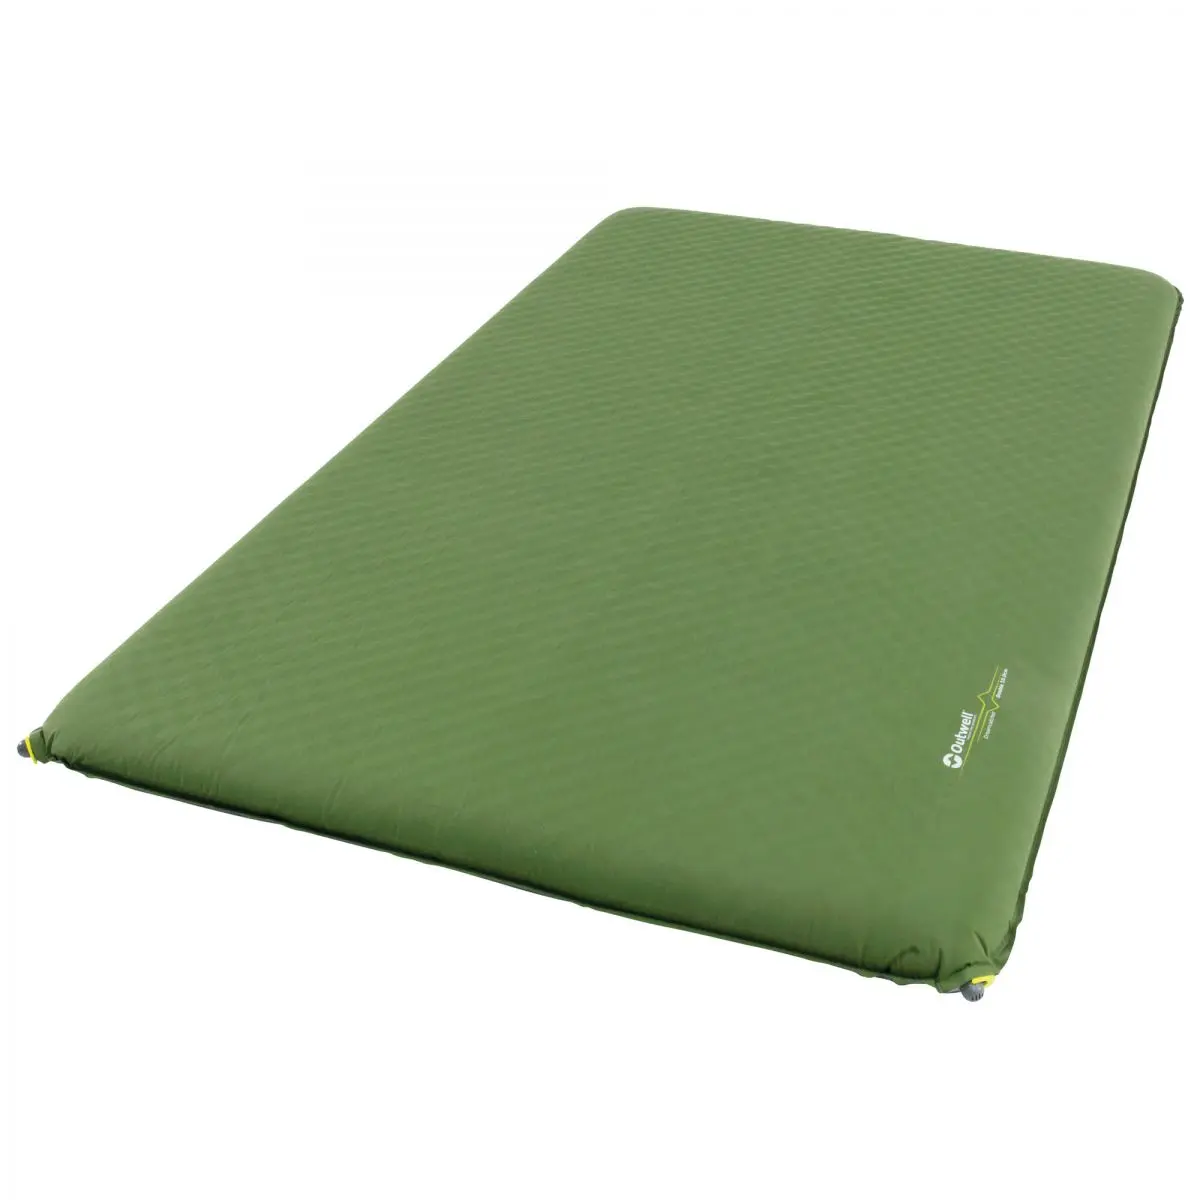 Önfelfújó szőnyeg Dreamcatcher - Dupla 10,0 cm, 195 x 130 x 10 cm, zöld